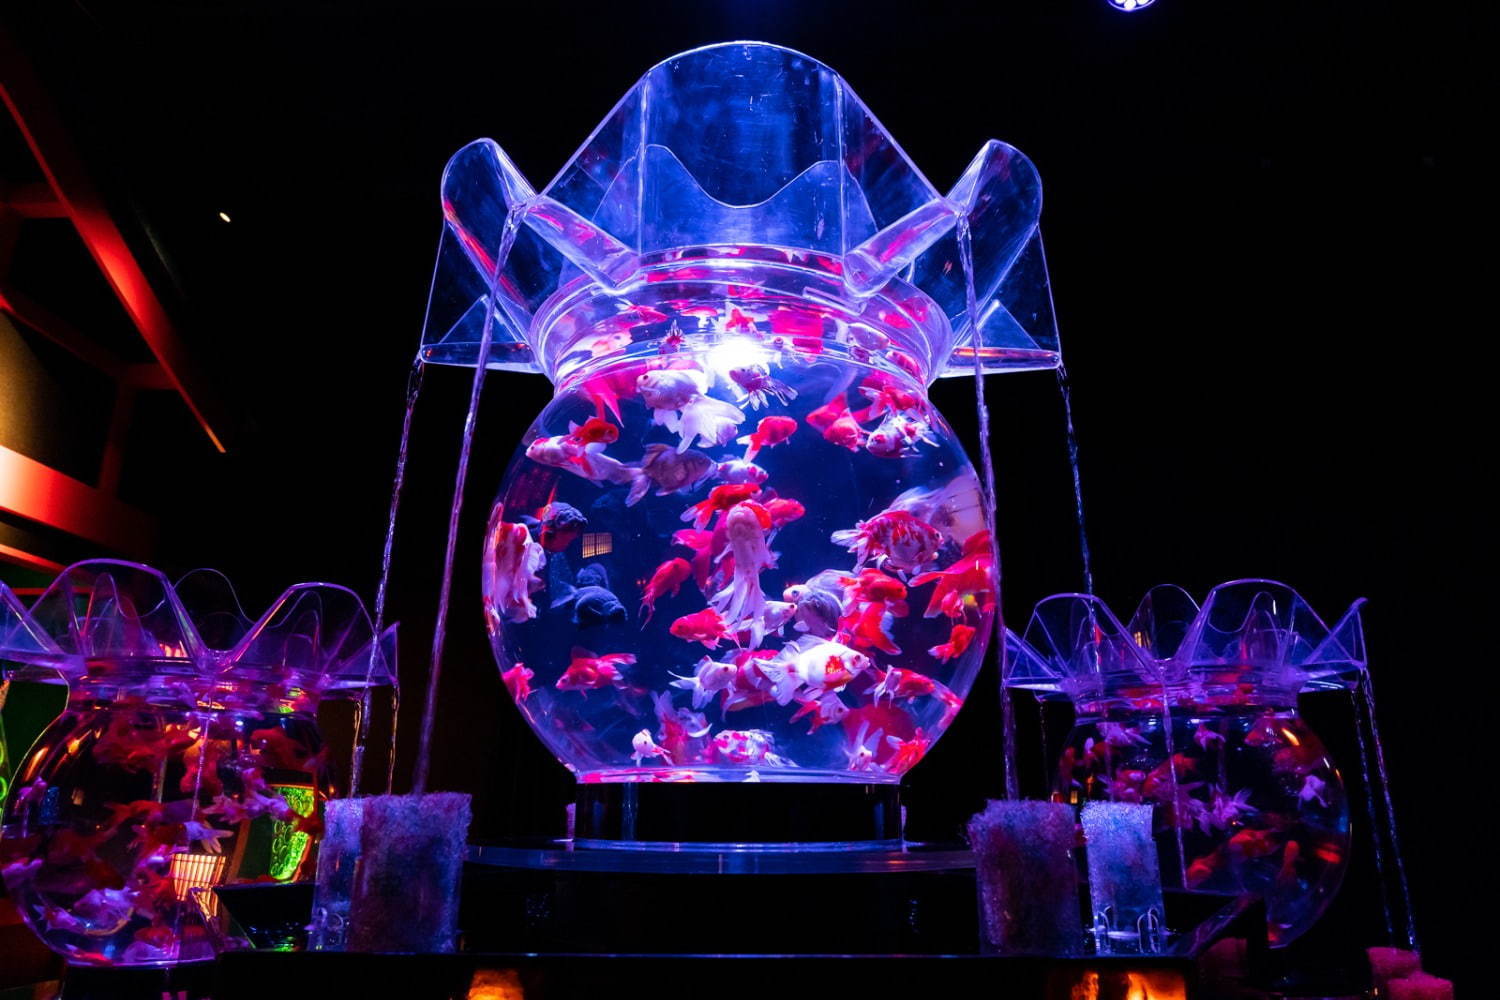 アートアクアリウム美術館 東京 日本橋に誕生 過去最大30 000匹超の金魚が泳ぐアート空間 ファッションプレス